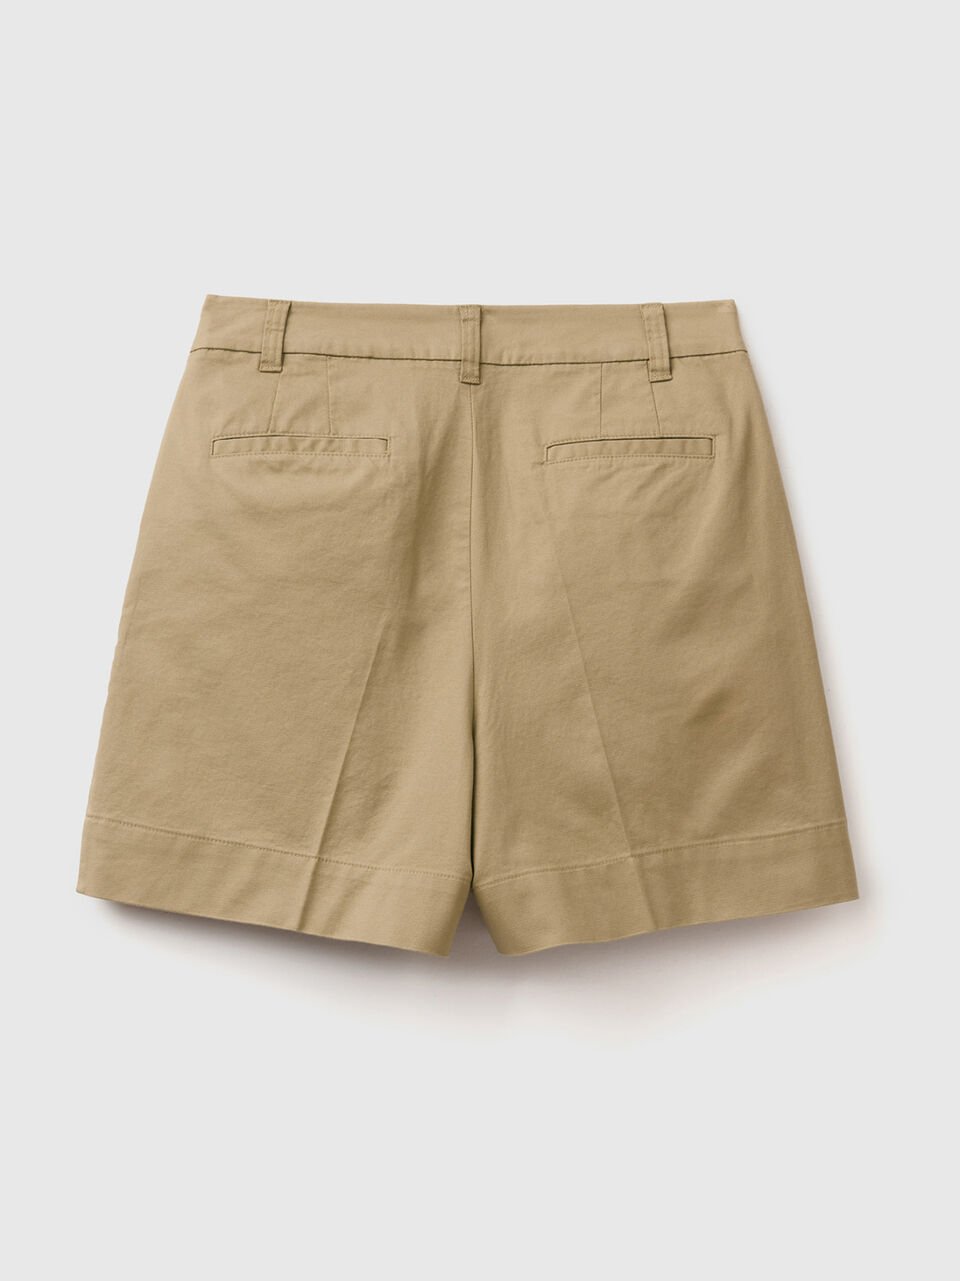 (image for) in offerta Shorts in cotone elasticizzato Economico